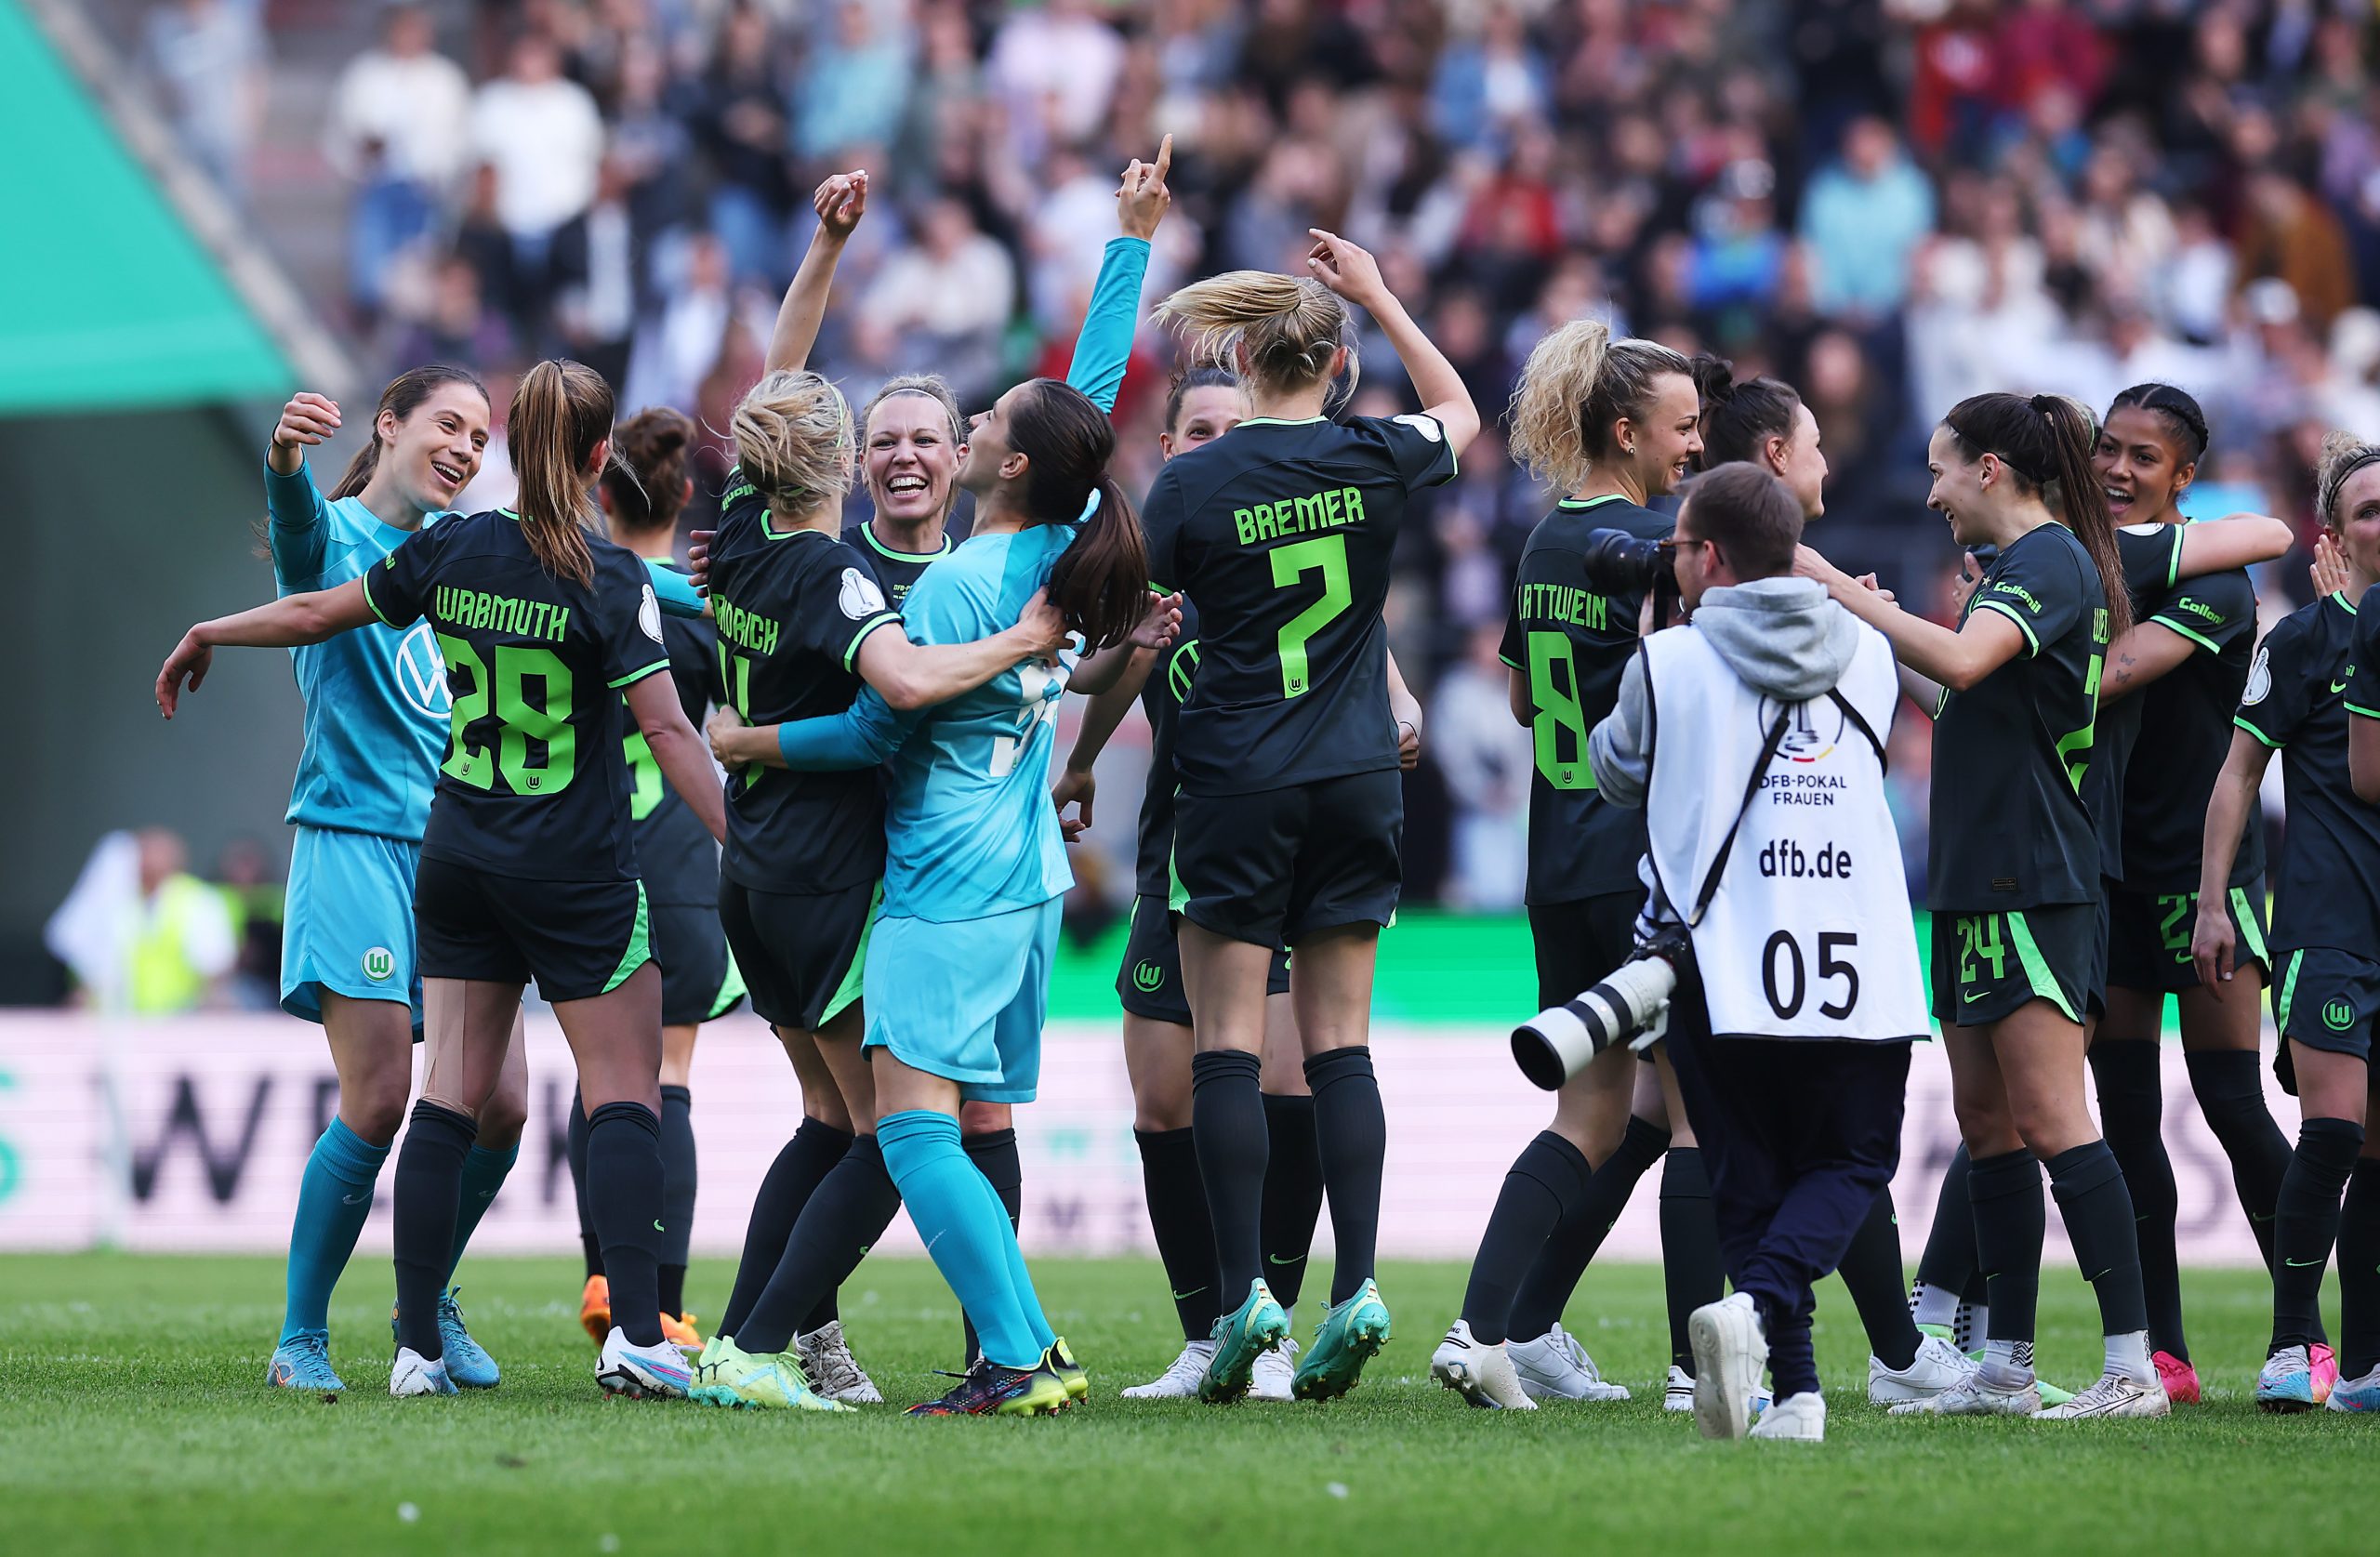 Kantersieg vor Rekordkulisse VfL Wolfsburg Frauen gewinnen DFB-Pokal